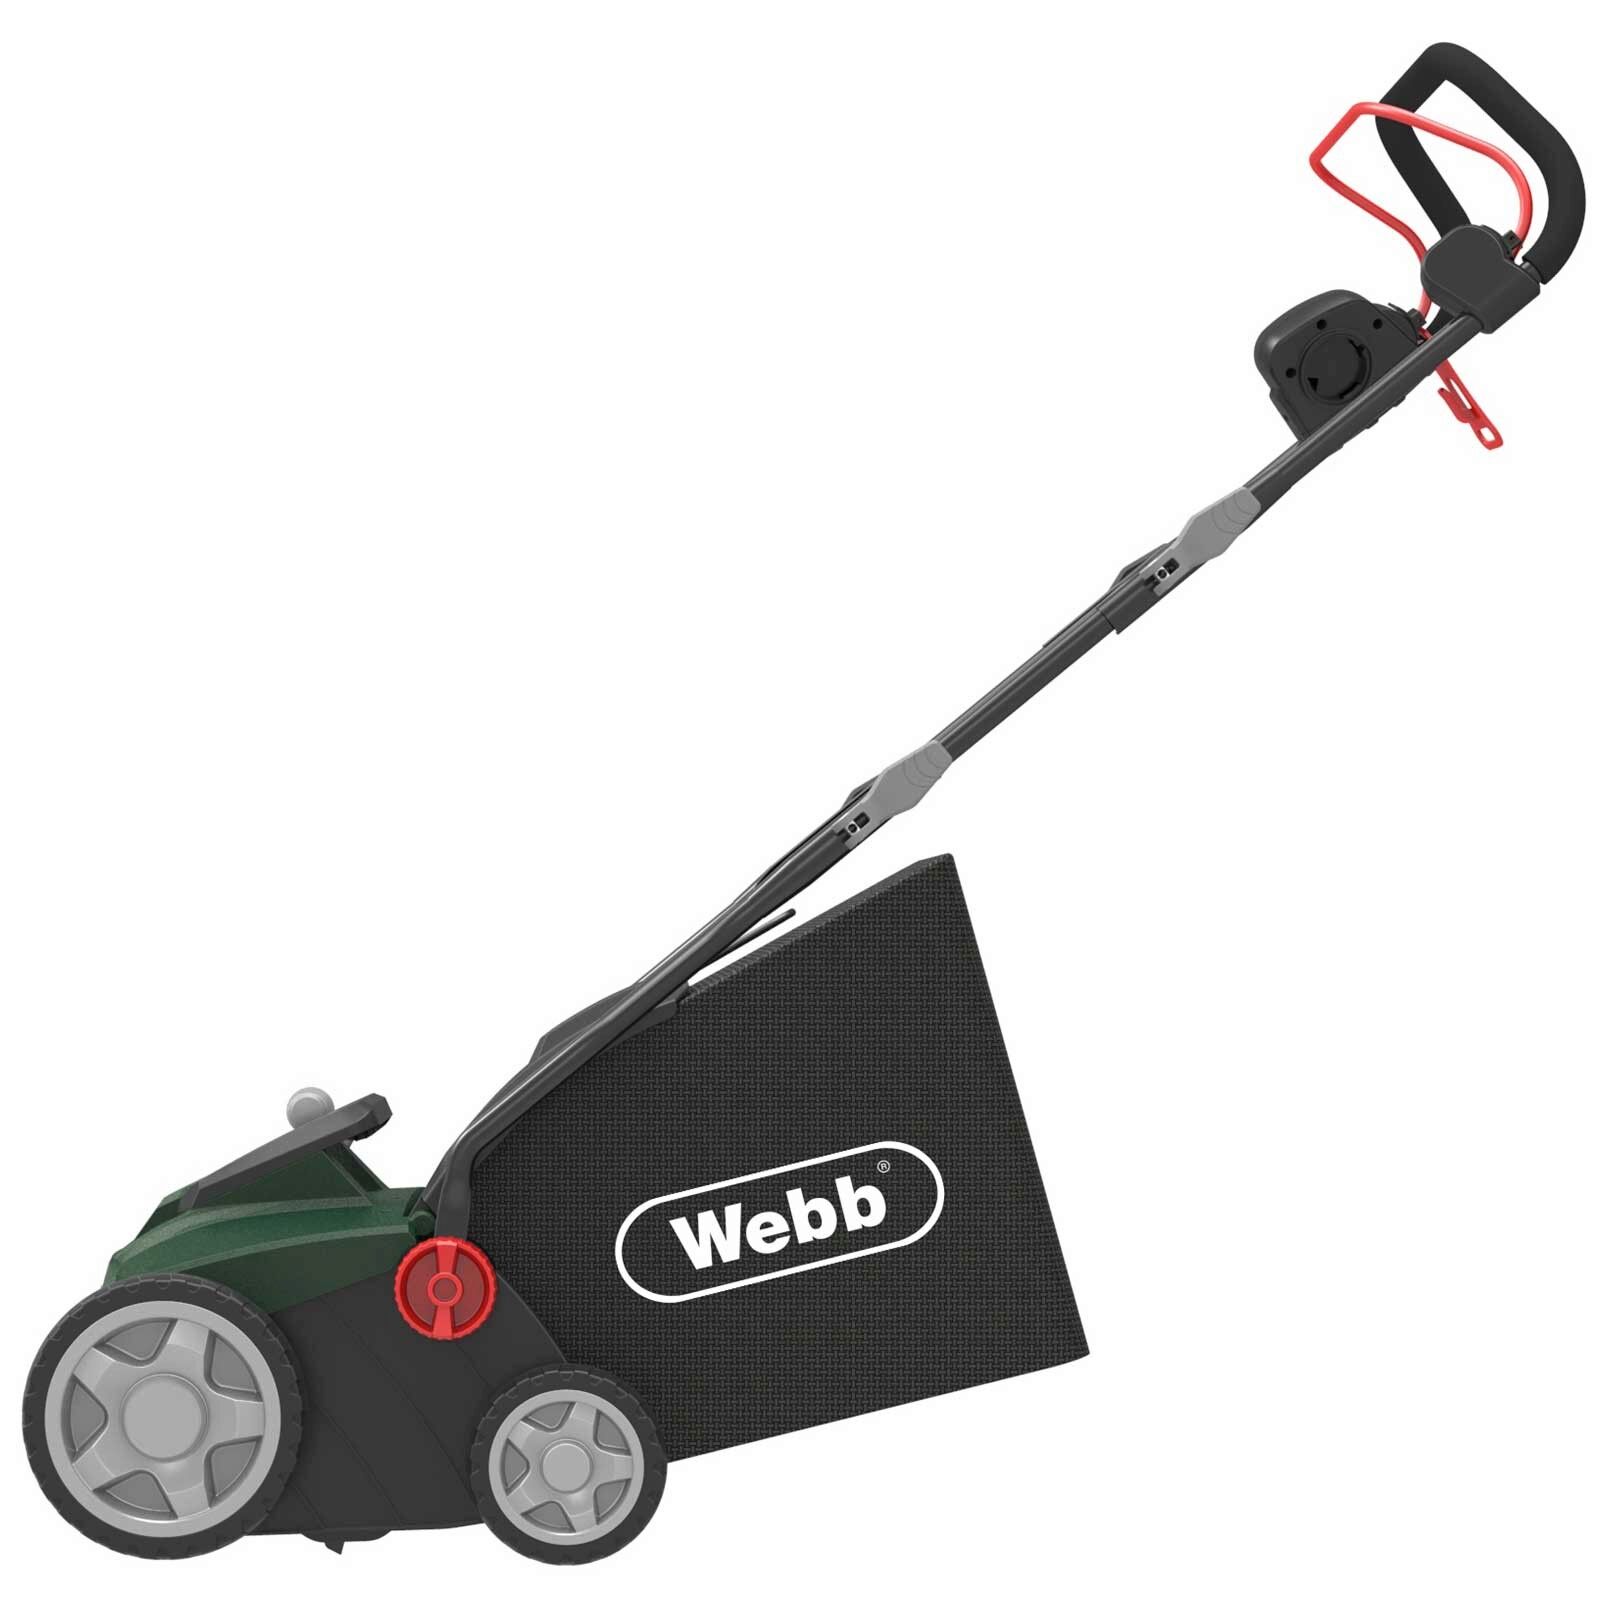 Webb 2 in 1 Electric Scarifier & Lawn Raker 36cm / 1500w